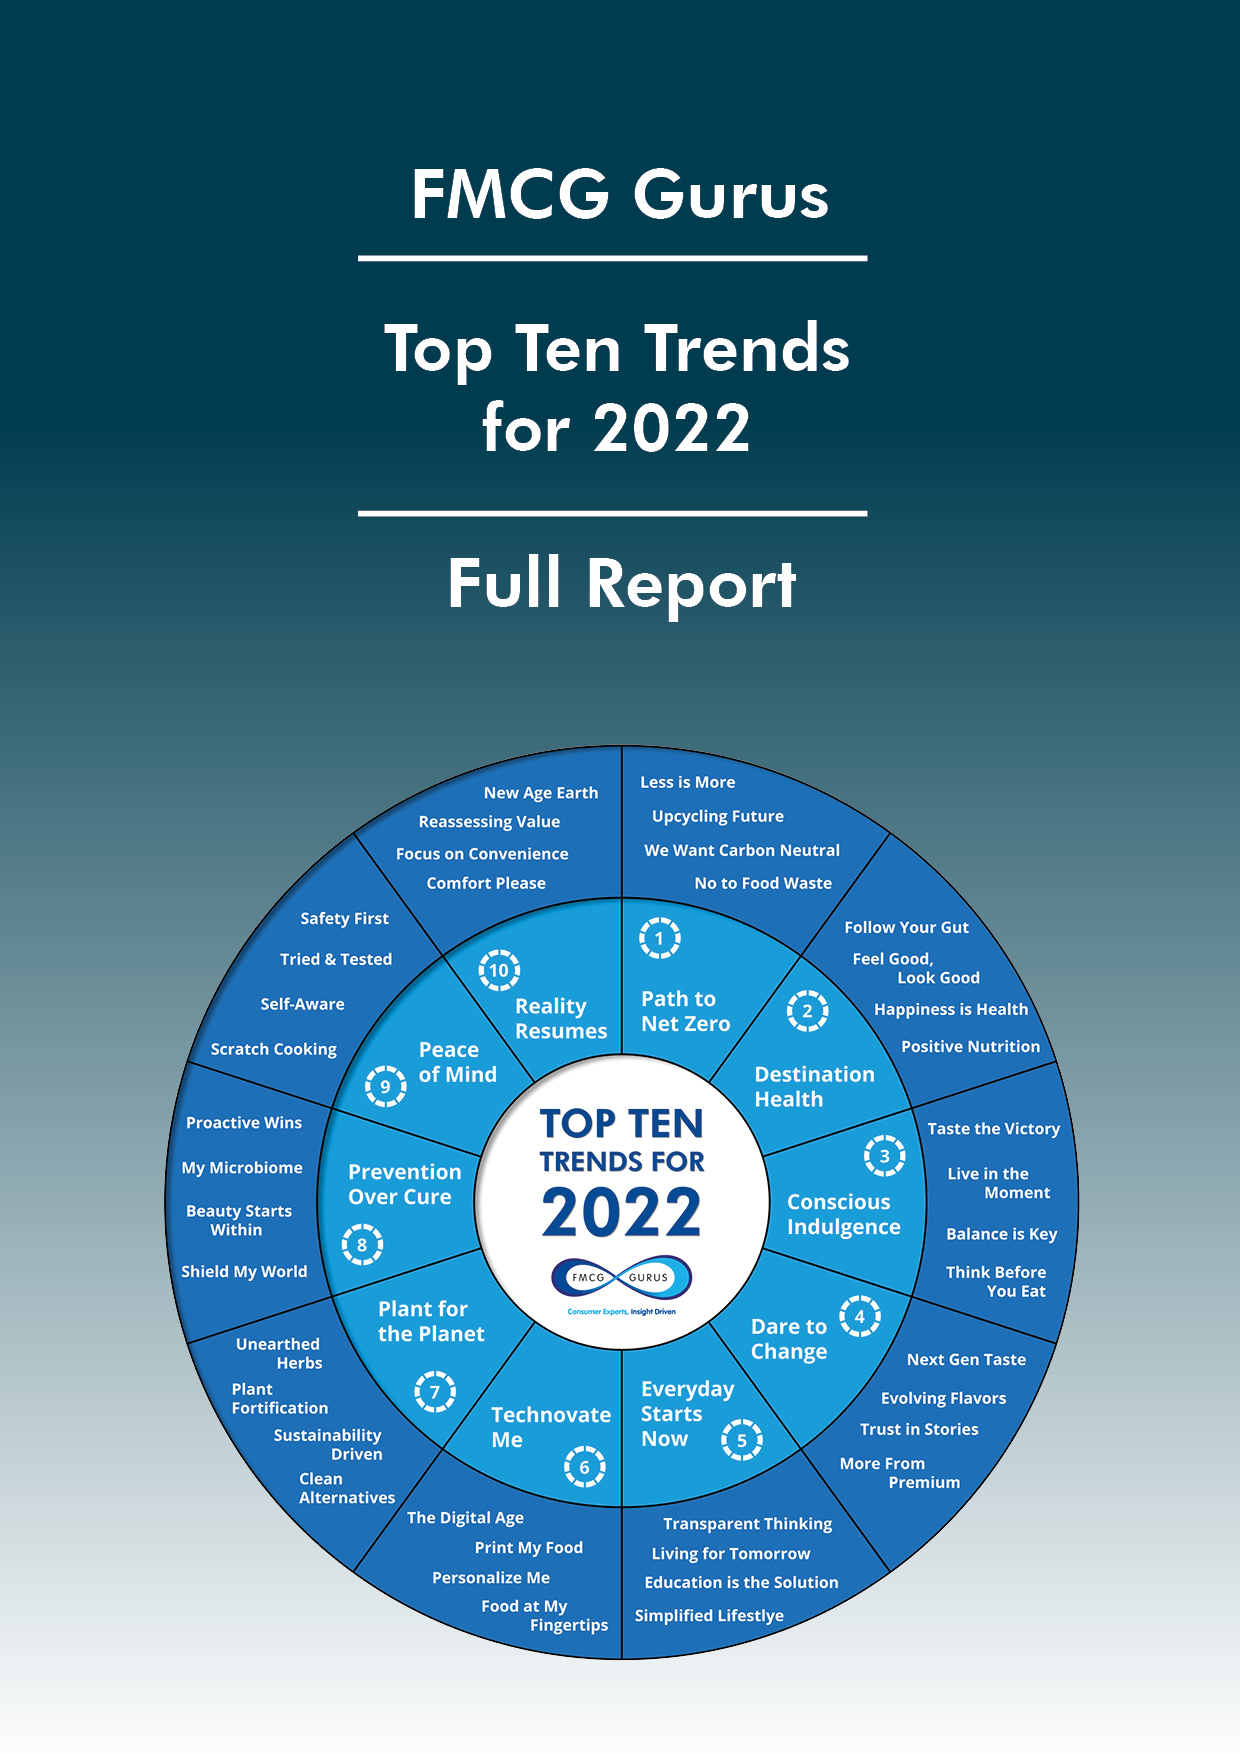 FMCG Gurus - Top Ten Trends 2022